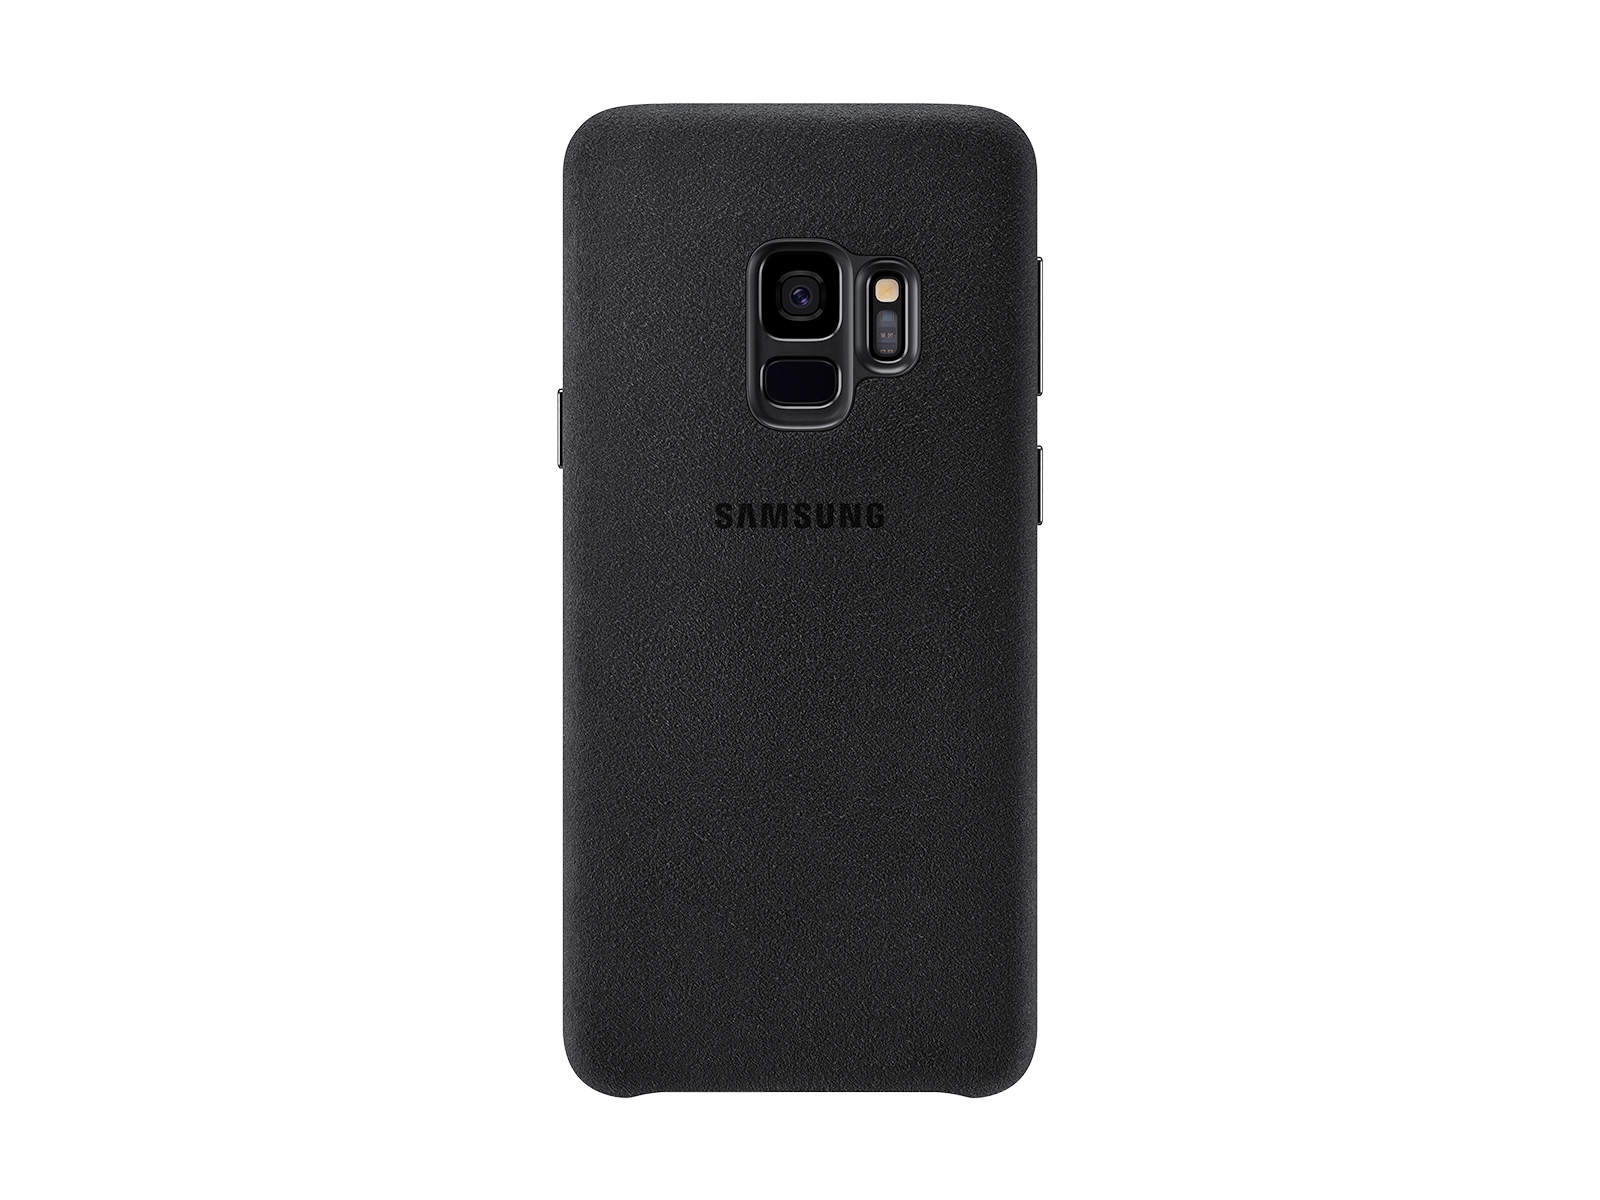 Thumbnail image of Galaxy S9 Alcantara Cover, Black